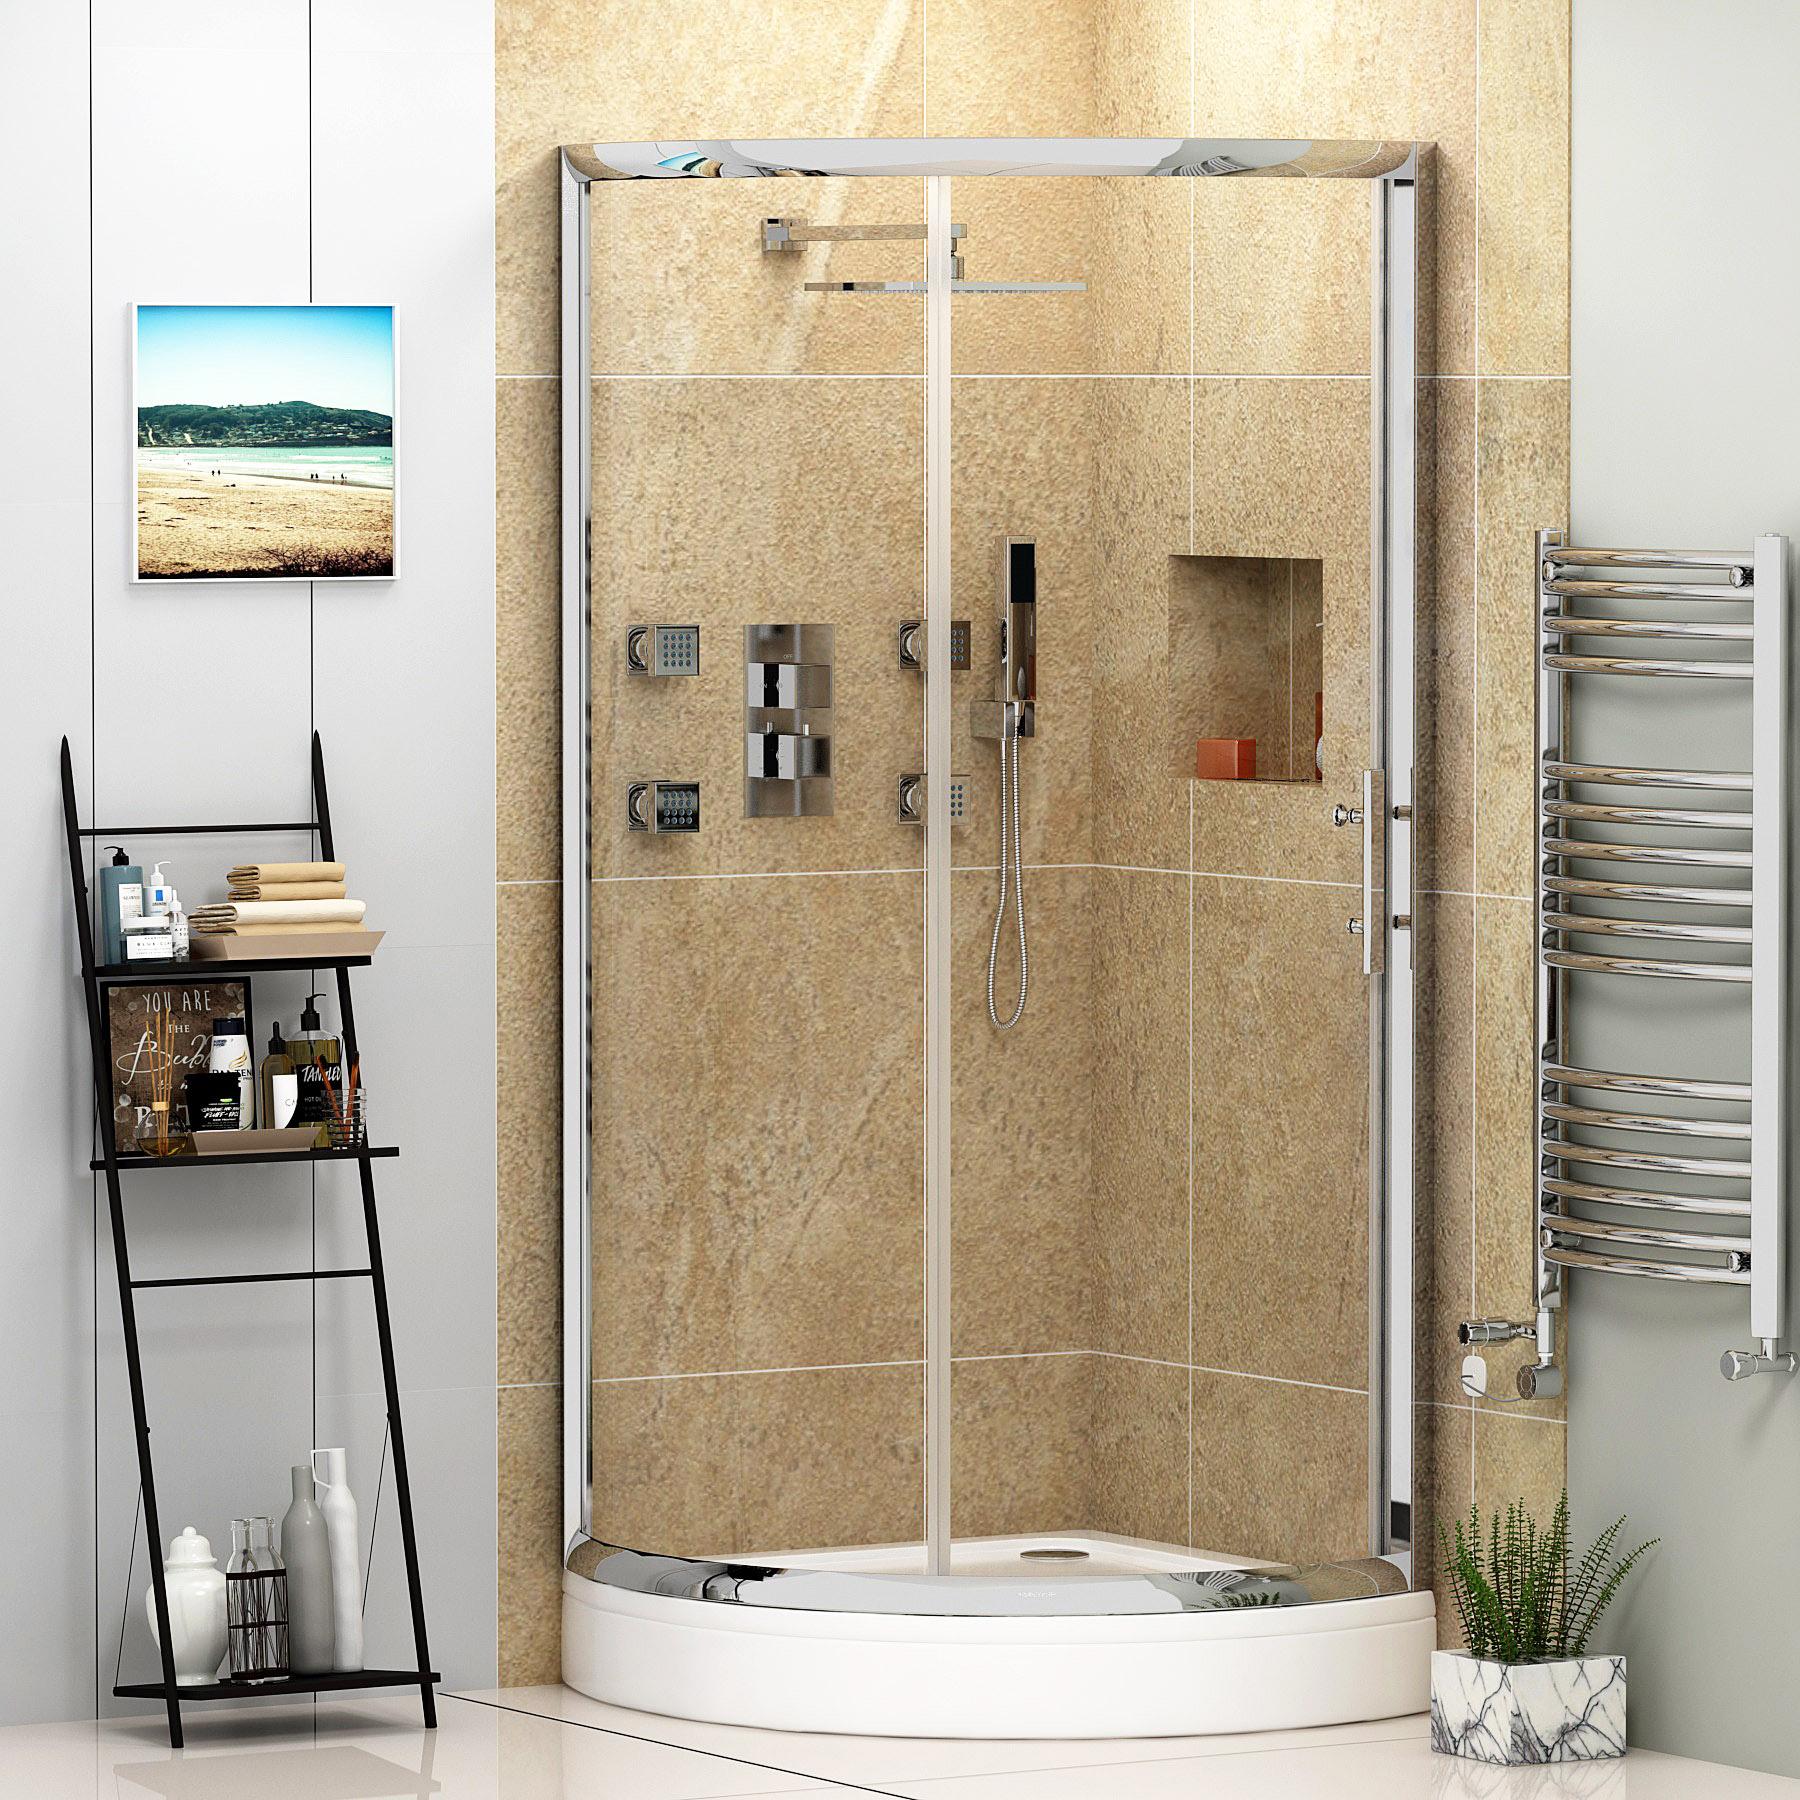 How To Measure a Quadrant Shower Enclosure?